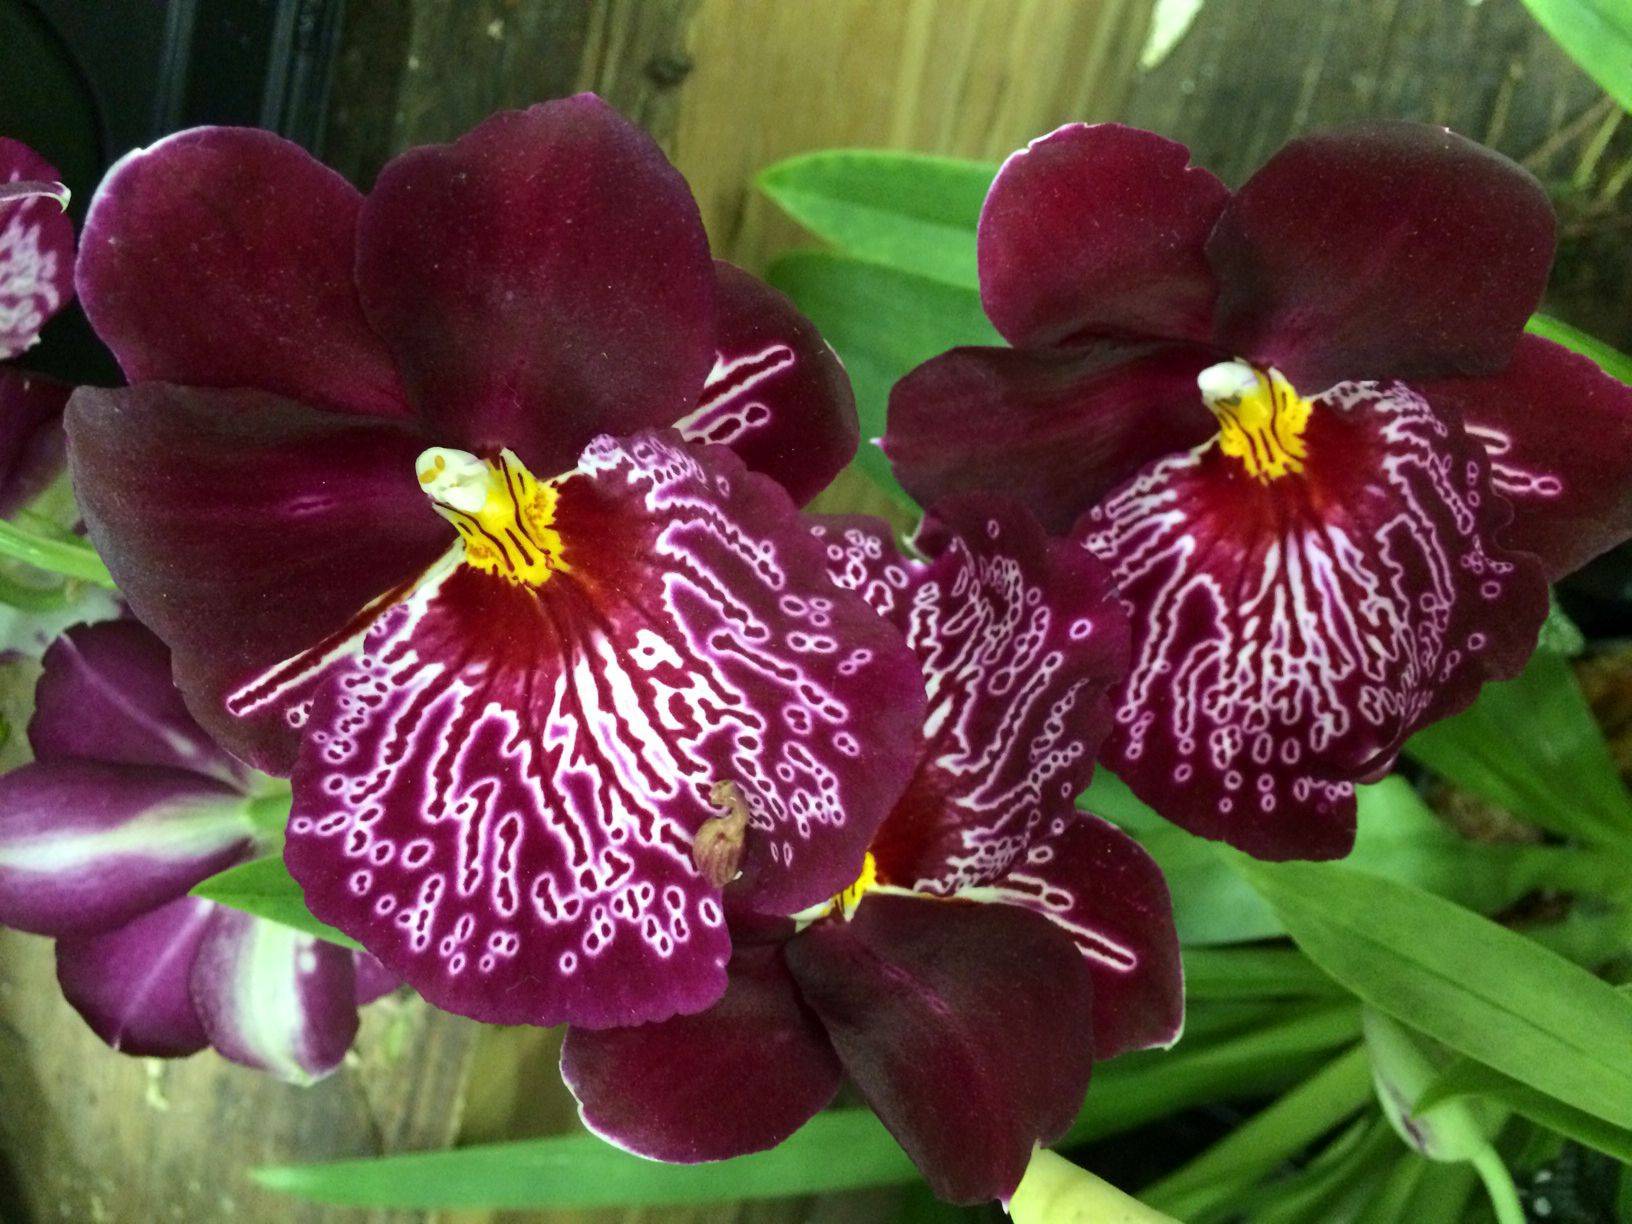 Орхидея мильтония: описание, главные отличия от других видов, фото сортов этого растения и советы по уходу за цветком в домашних условиях